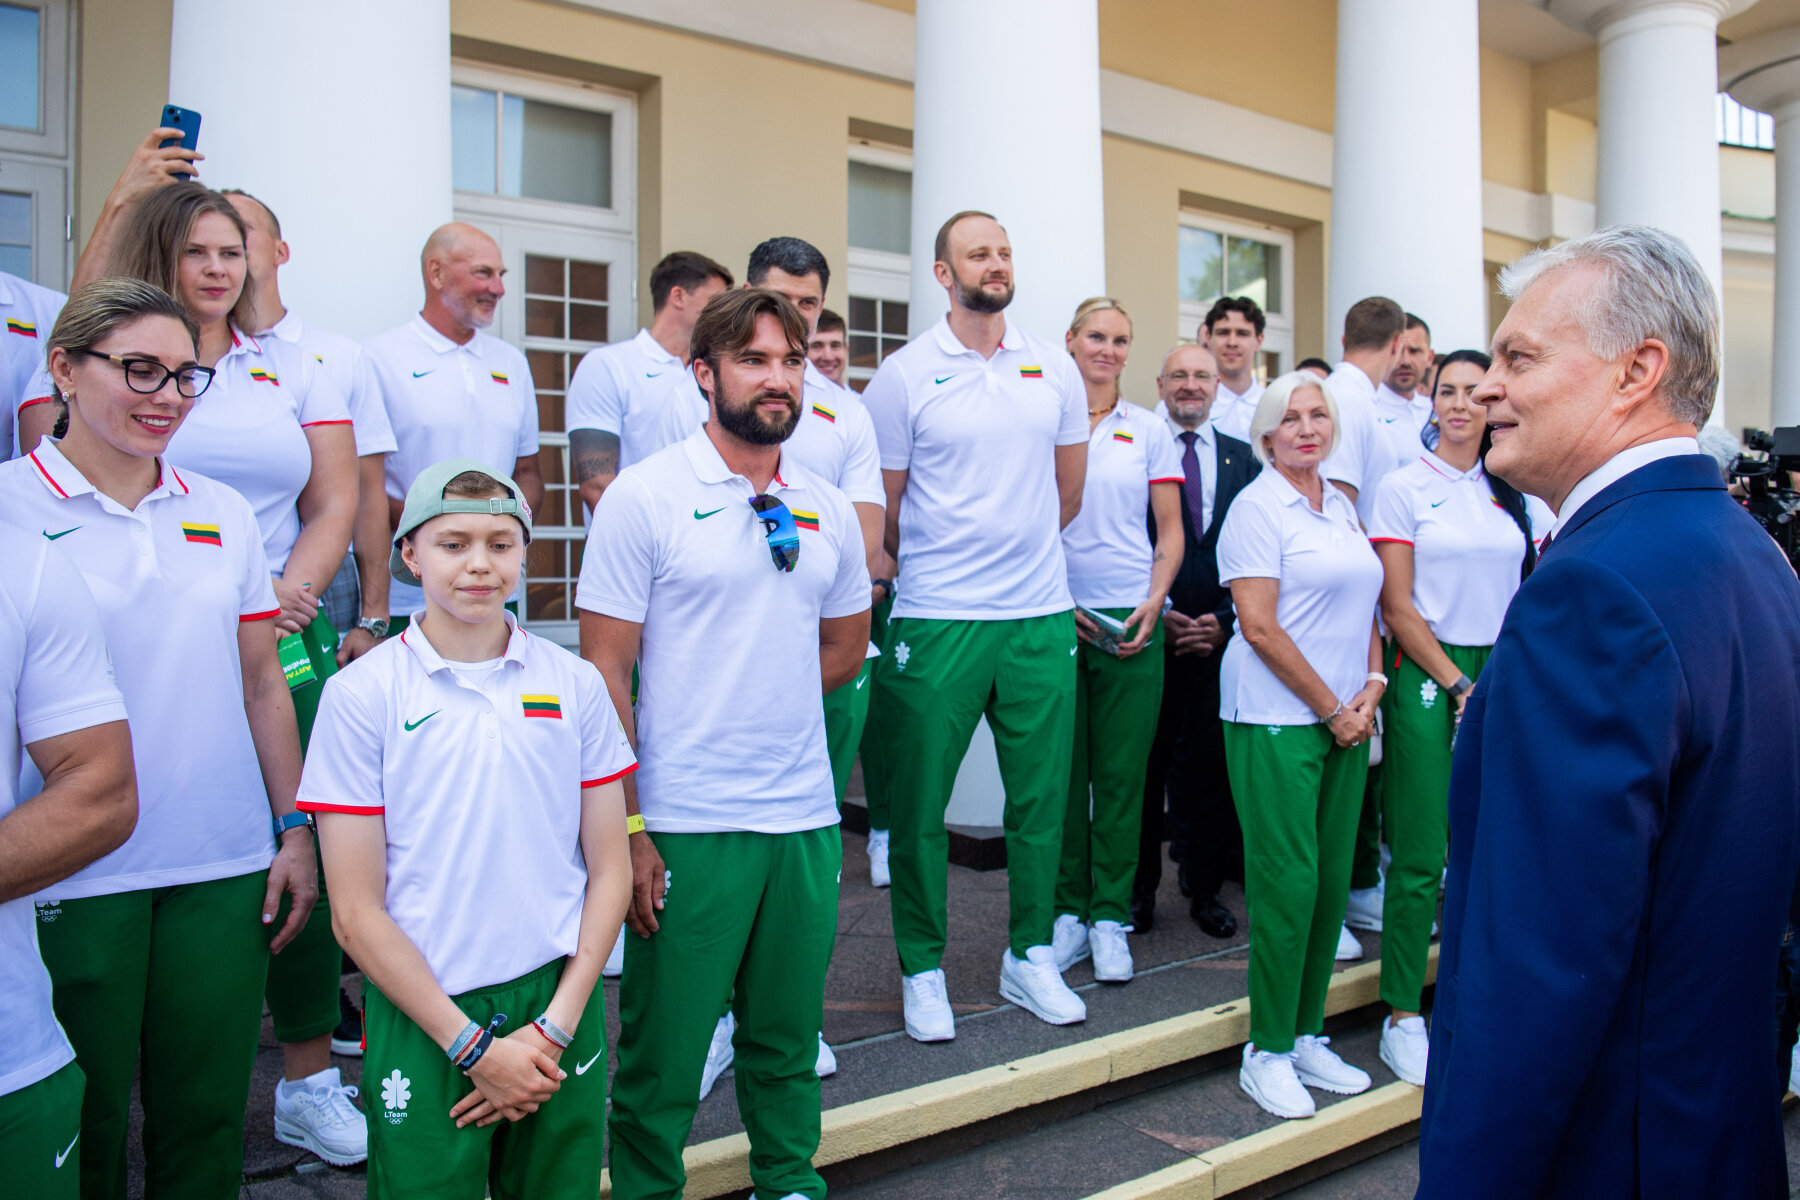 We wtorek Komitet Olimpijski wraz z Kancelarią Prezydenta oficjalnie pożegnał olimpijczyków w Pałacu Prezydenckim.